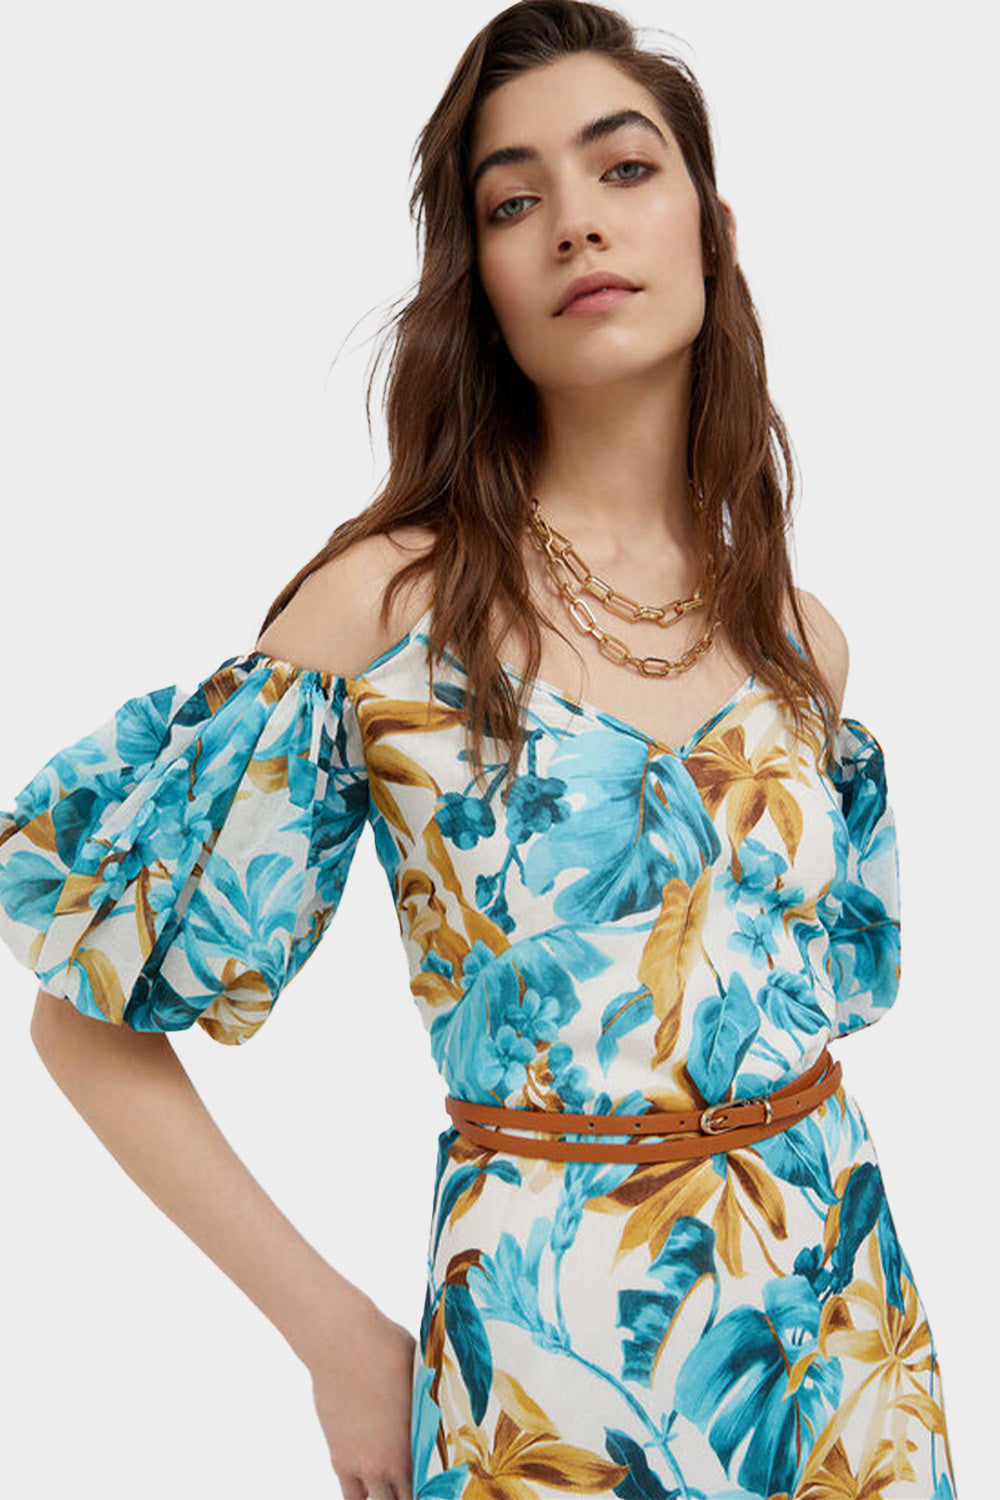 שמלה פרחונית לנשים שרוולי בלון LIU JO Vendome online | ונדום .